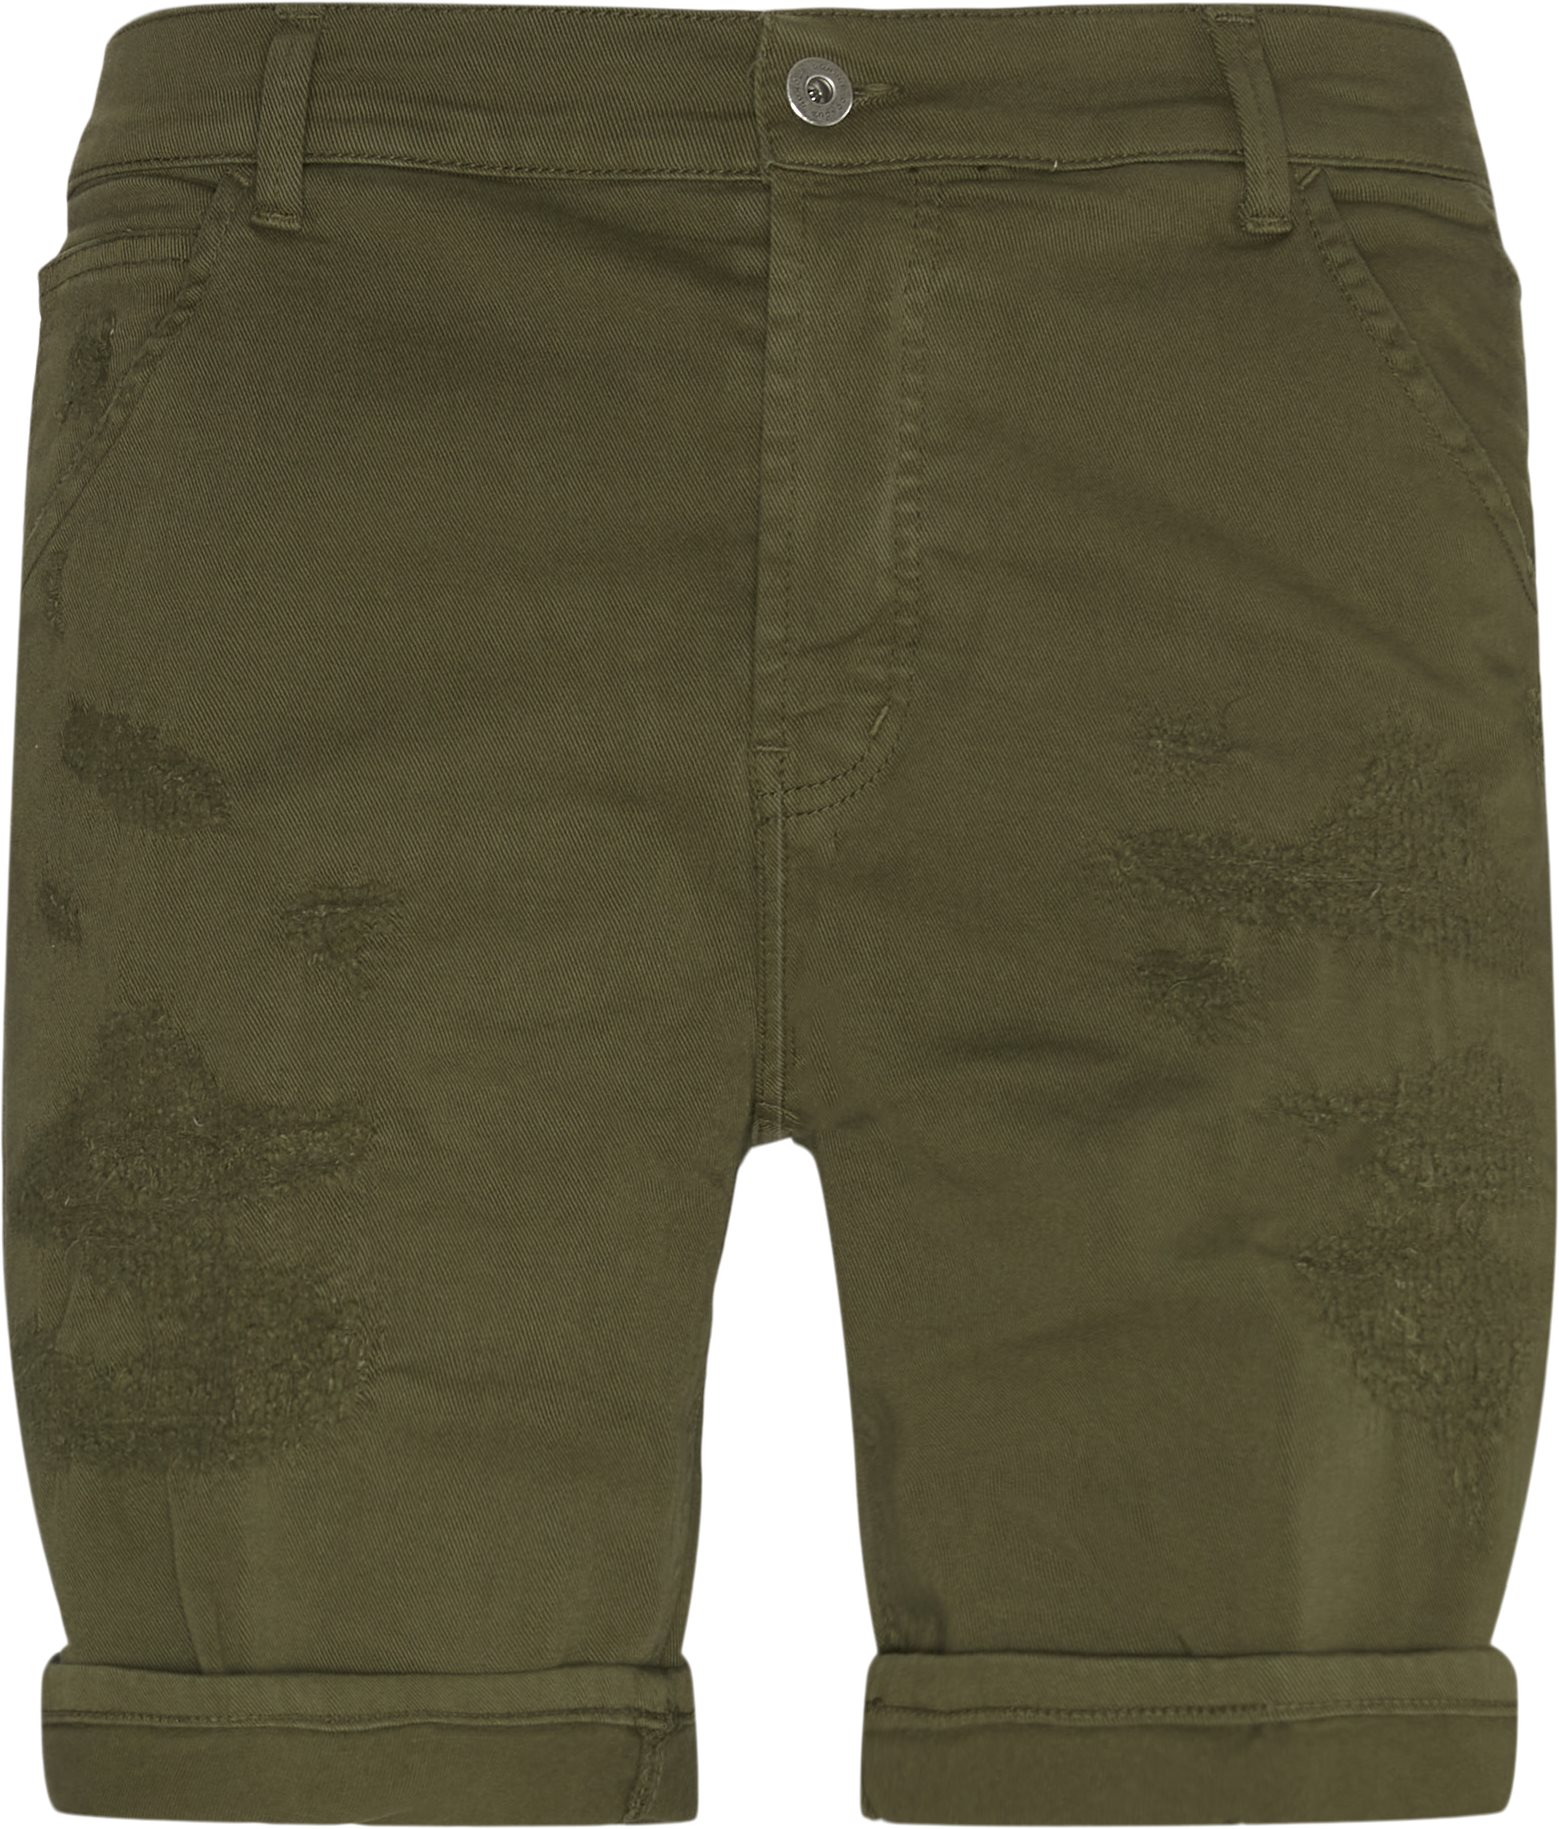 Shorts - Shorts - Regular fit - Army